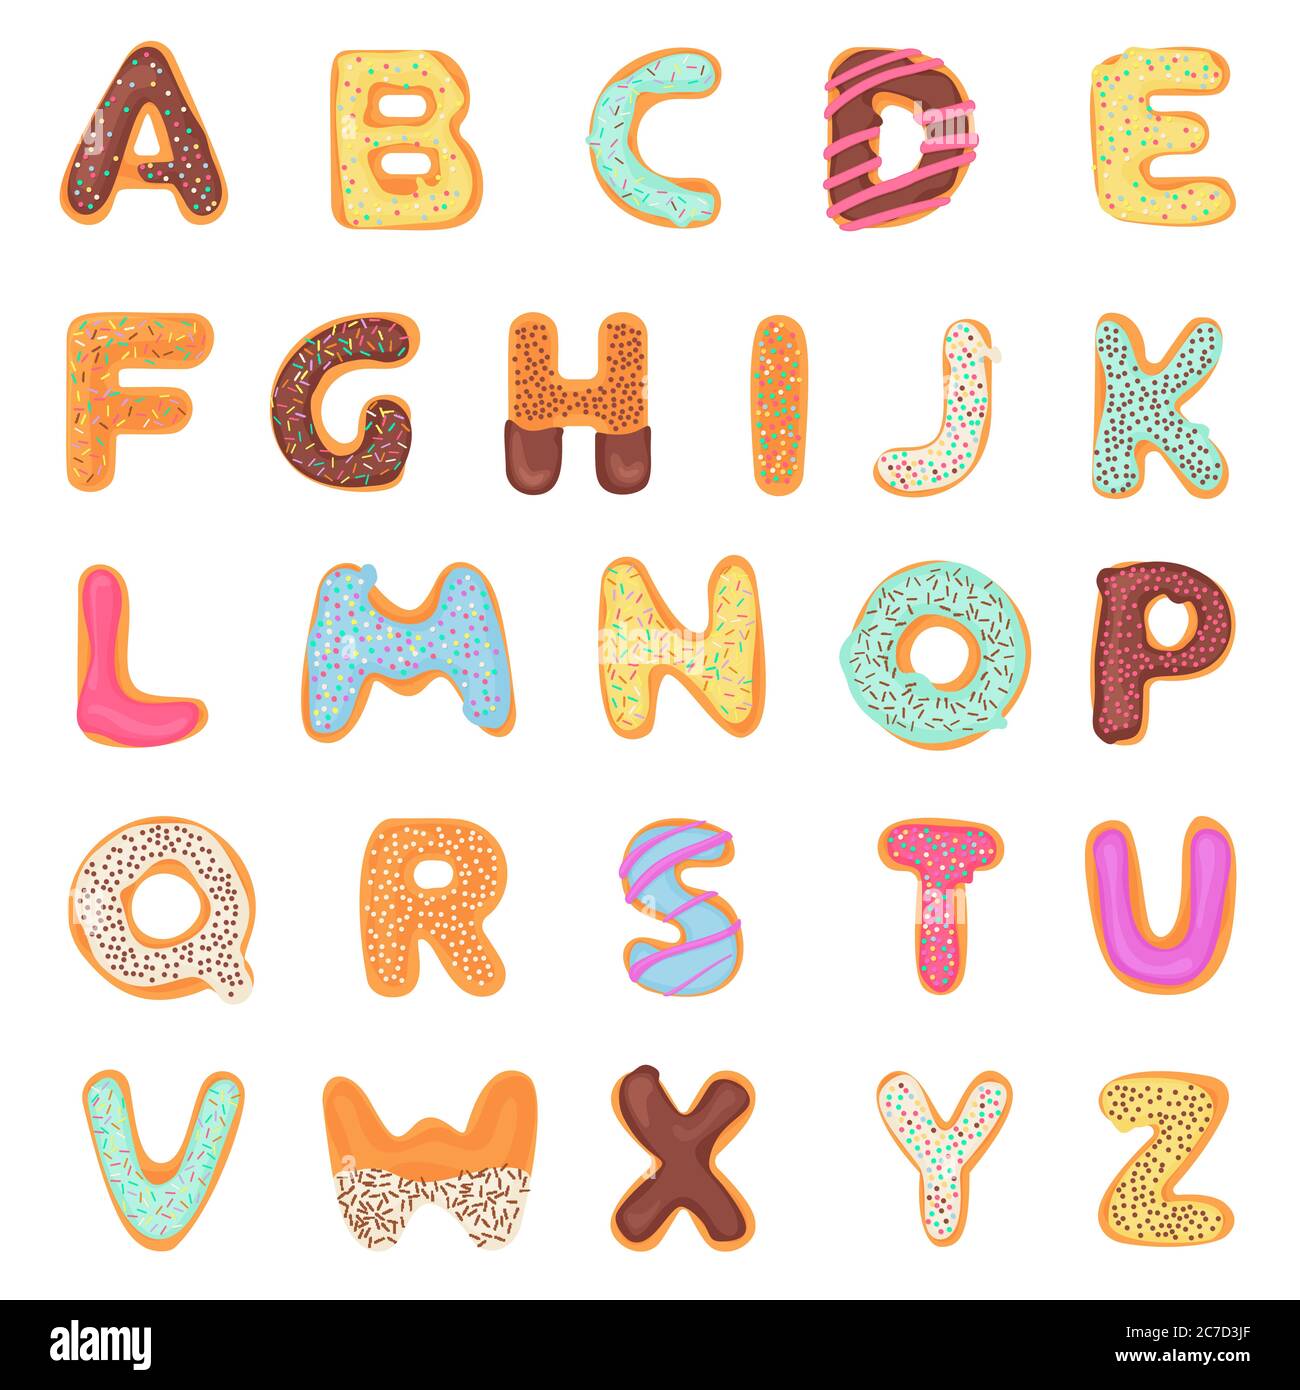 Set von köstlichen, süß, wie Donuts, glasiert, Schokolade, lecker, lecker, geformt Alphabet Schrift Buchstaben isoliert auf weißem Hintergrund. Farbenfrohe Vektorgrafik Stock Vektor